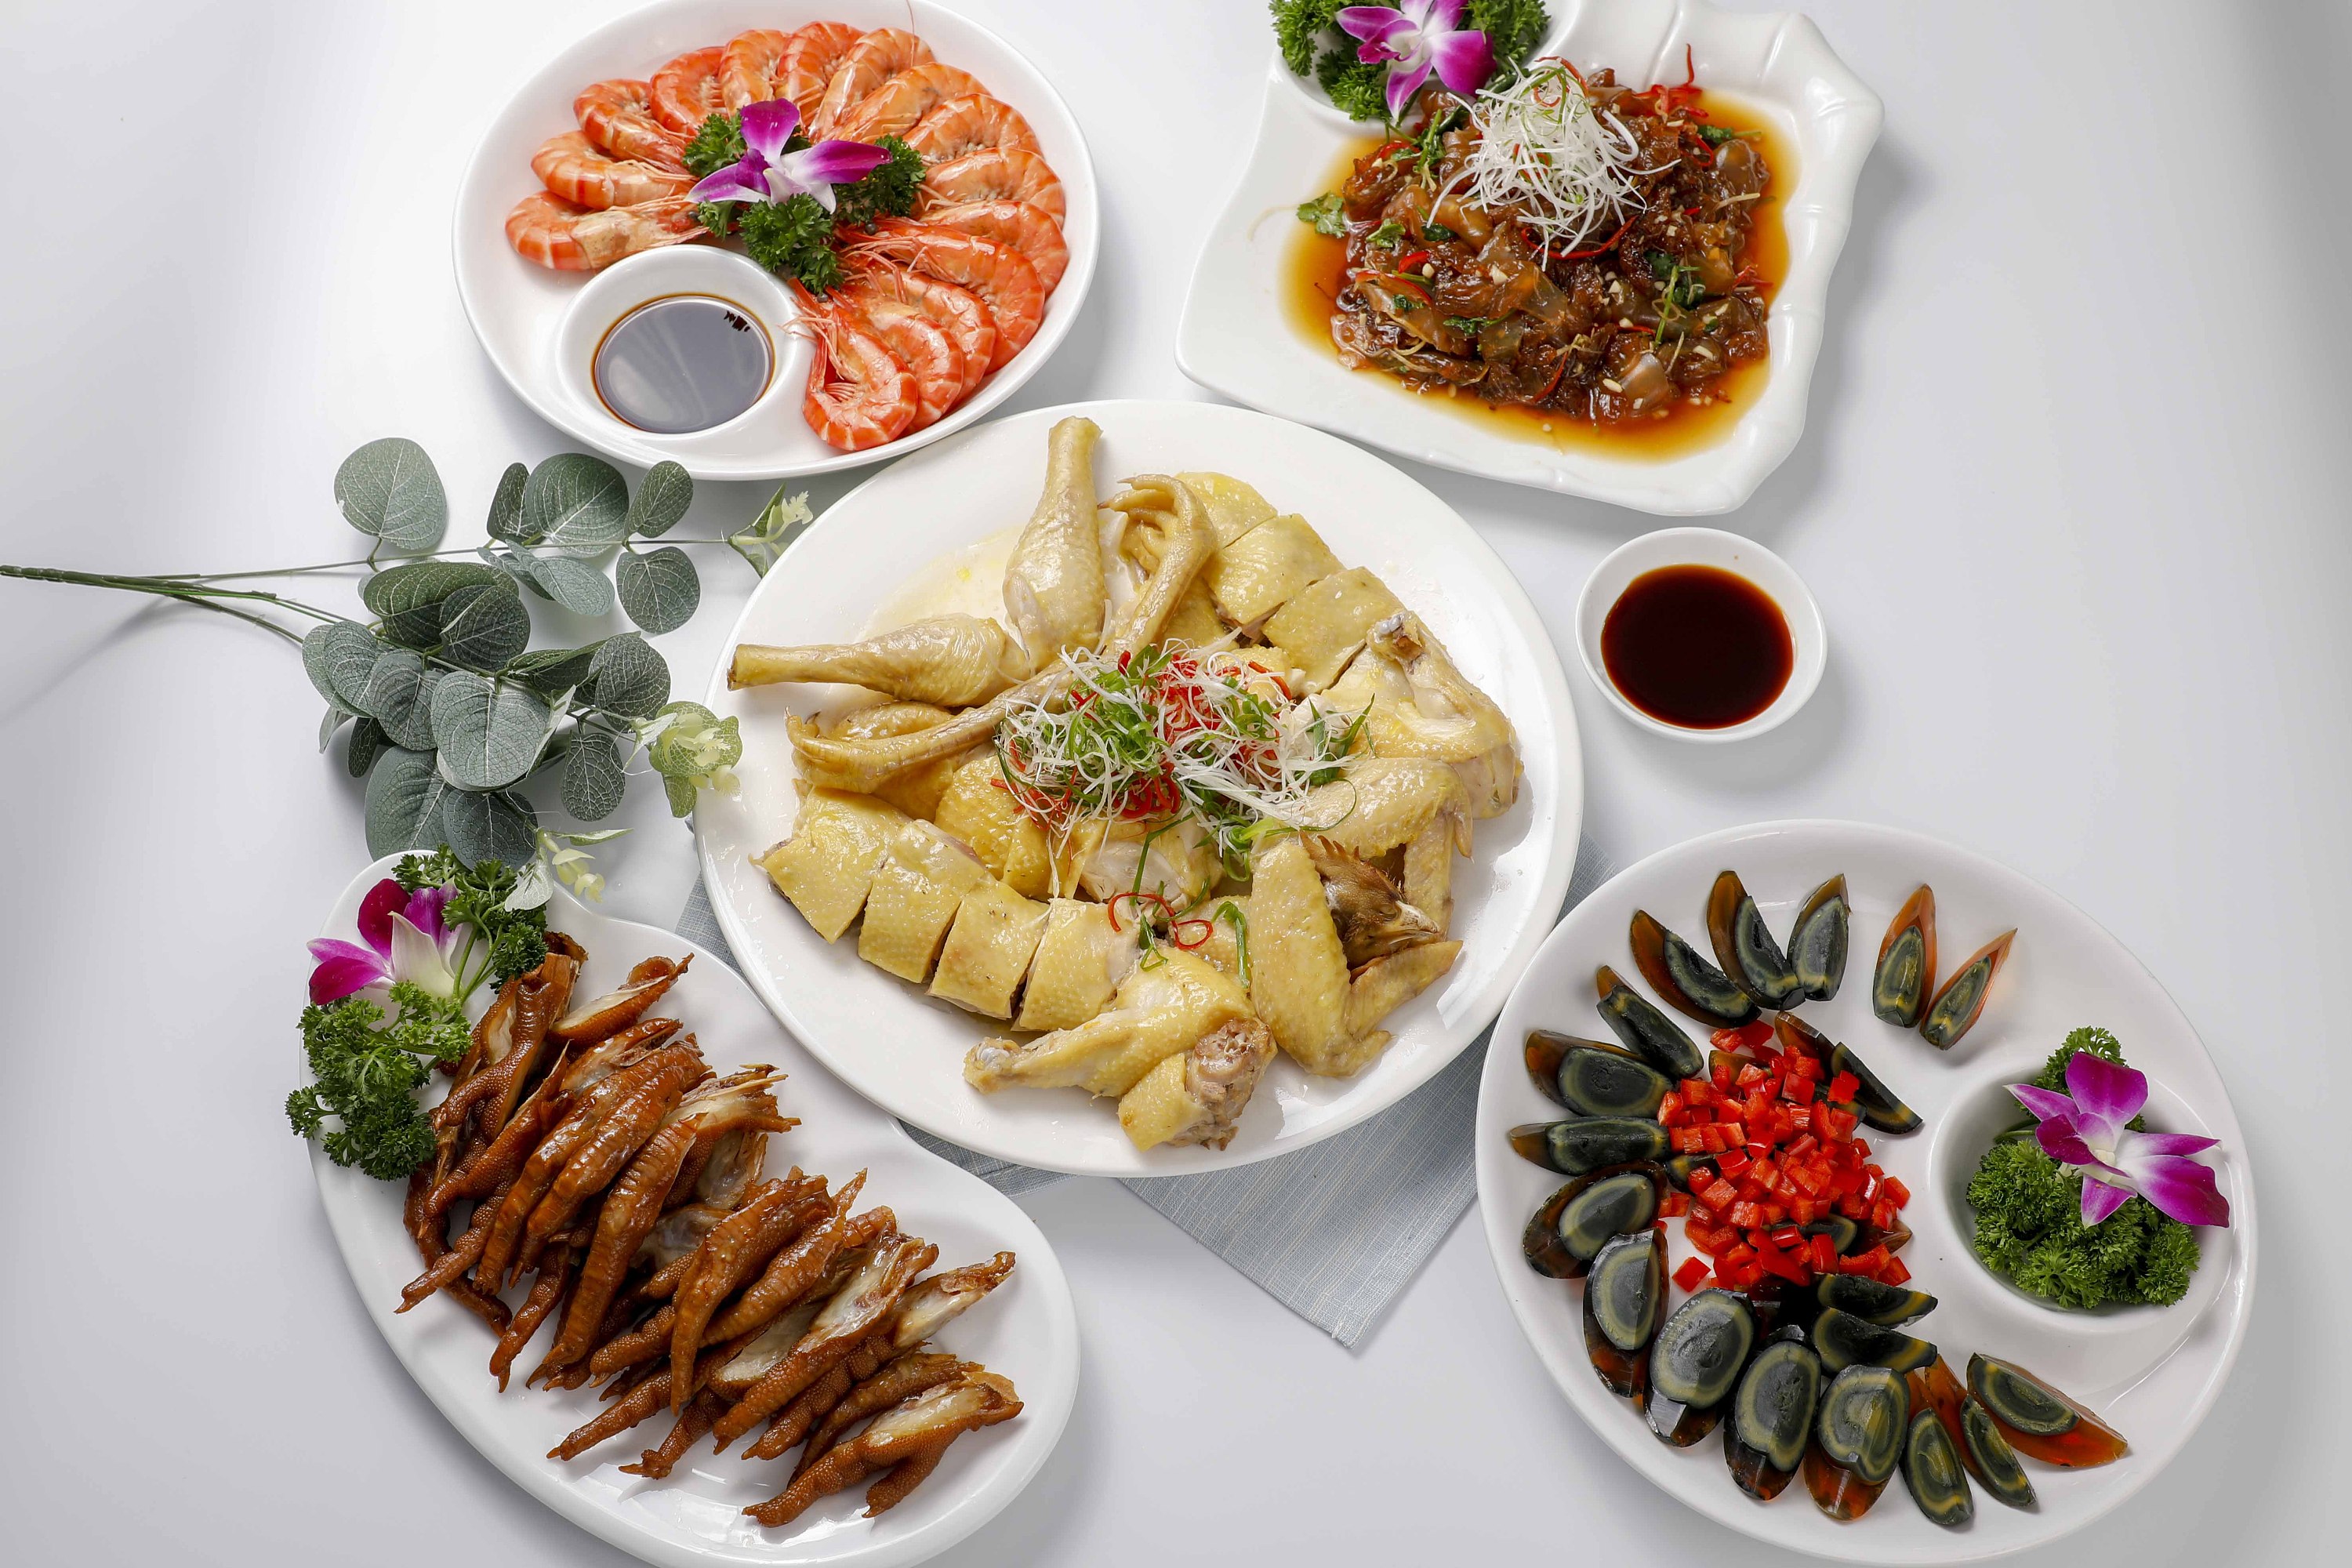 新疆菜菜谱摄影设计-CND设计网,中国设计网络首选品牌